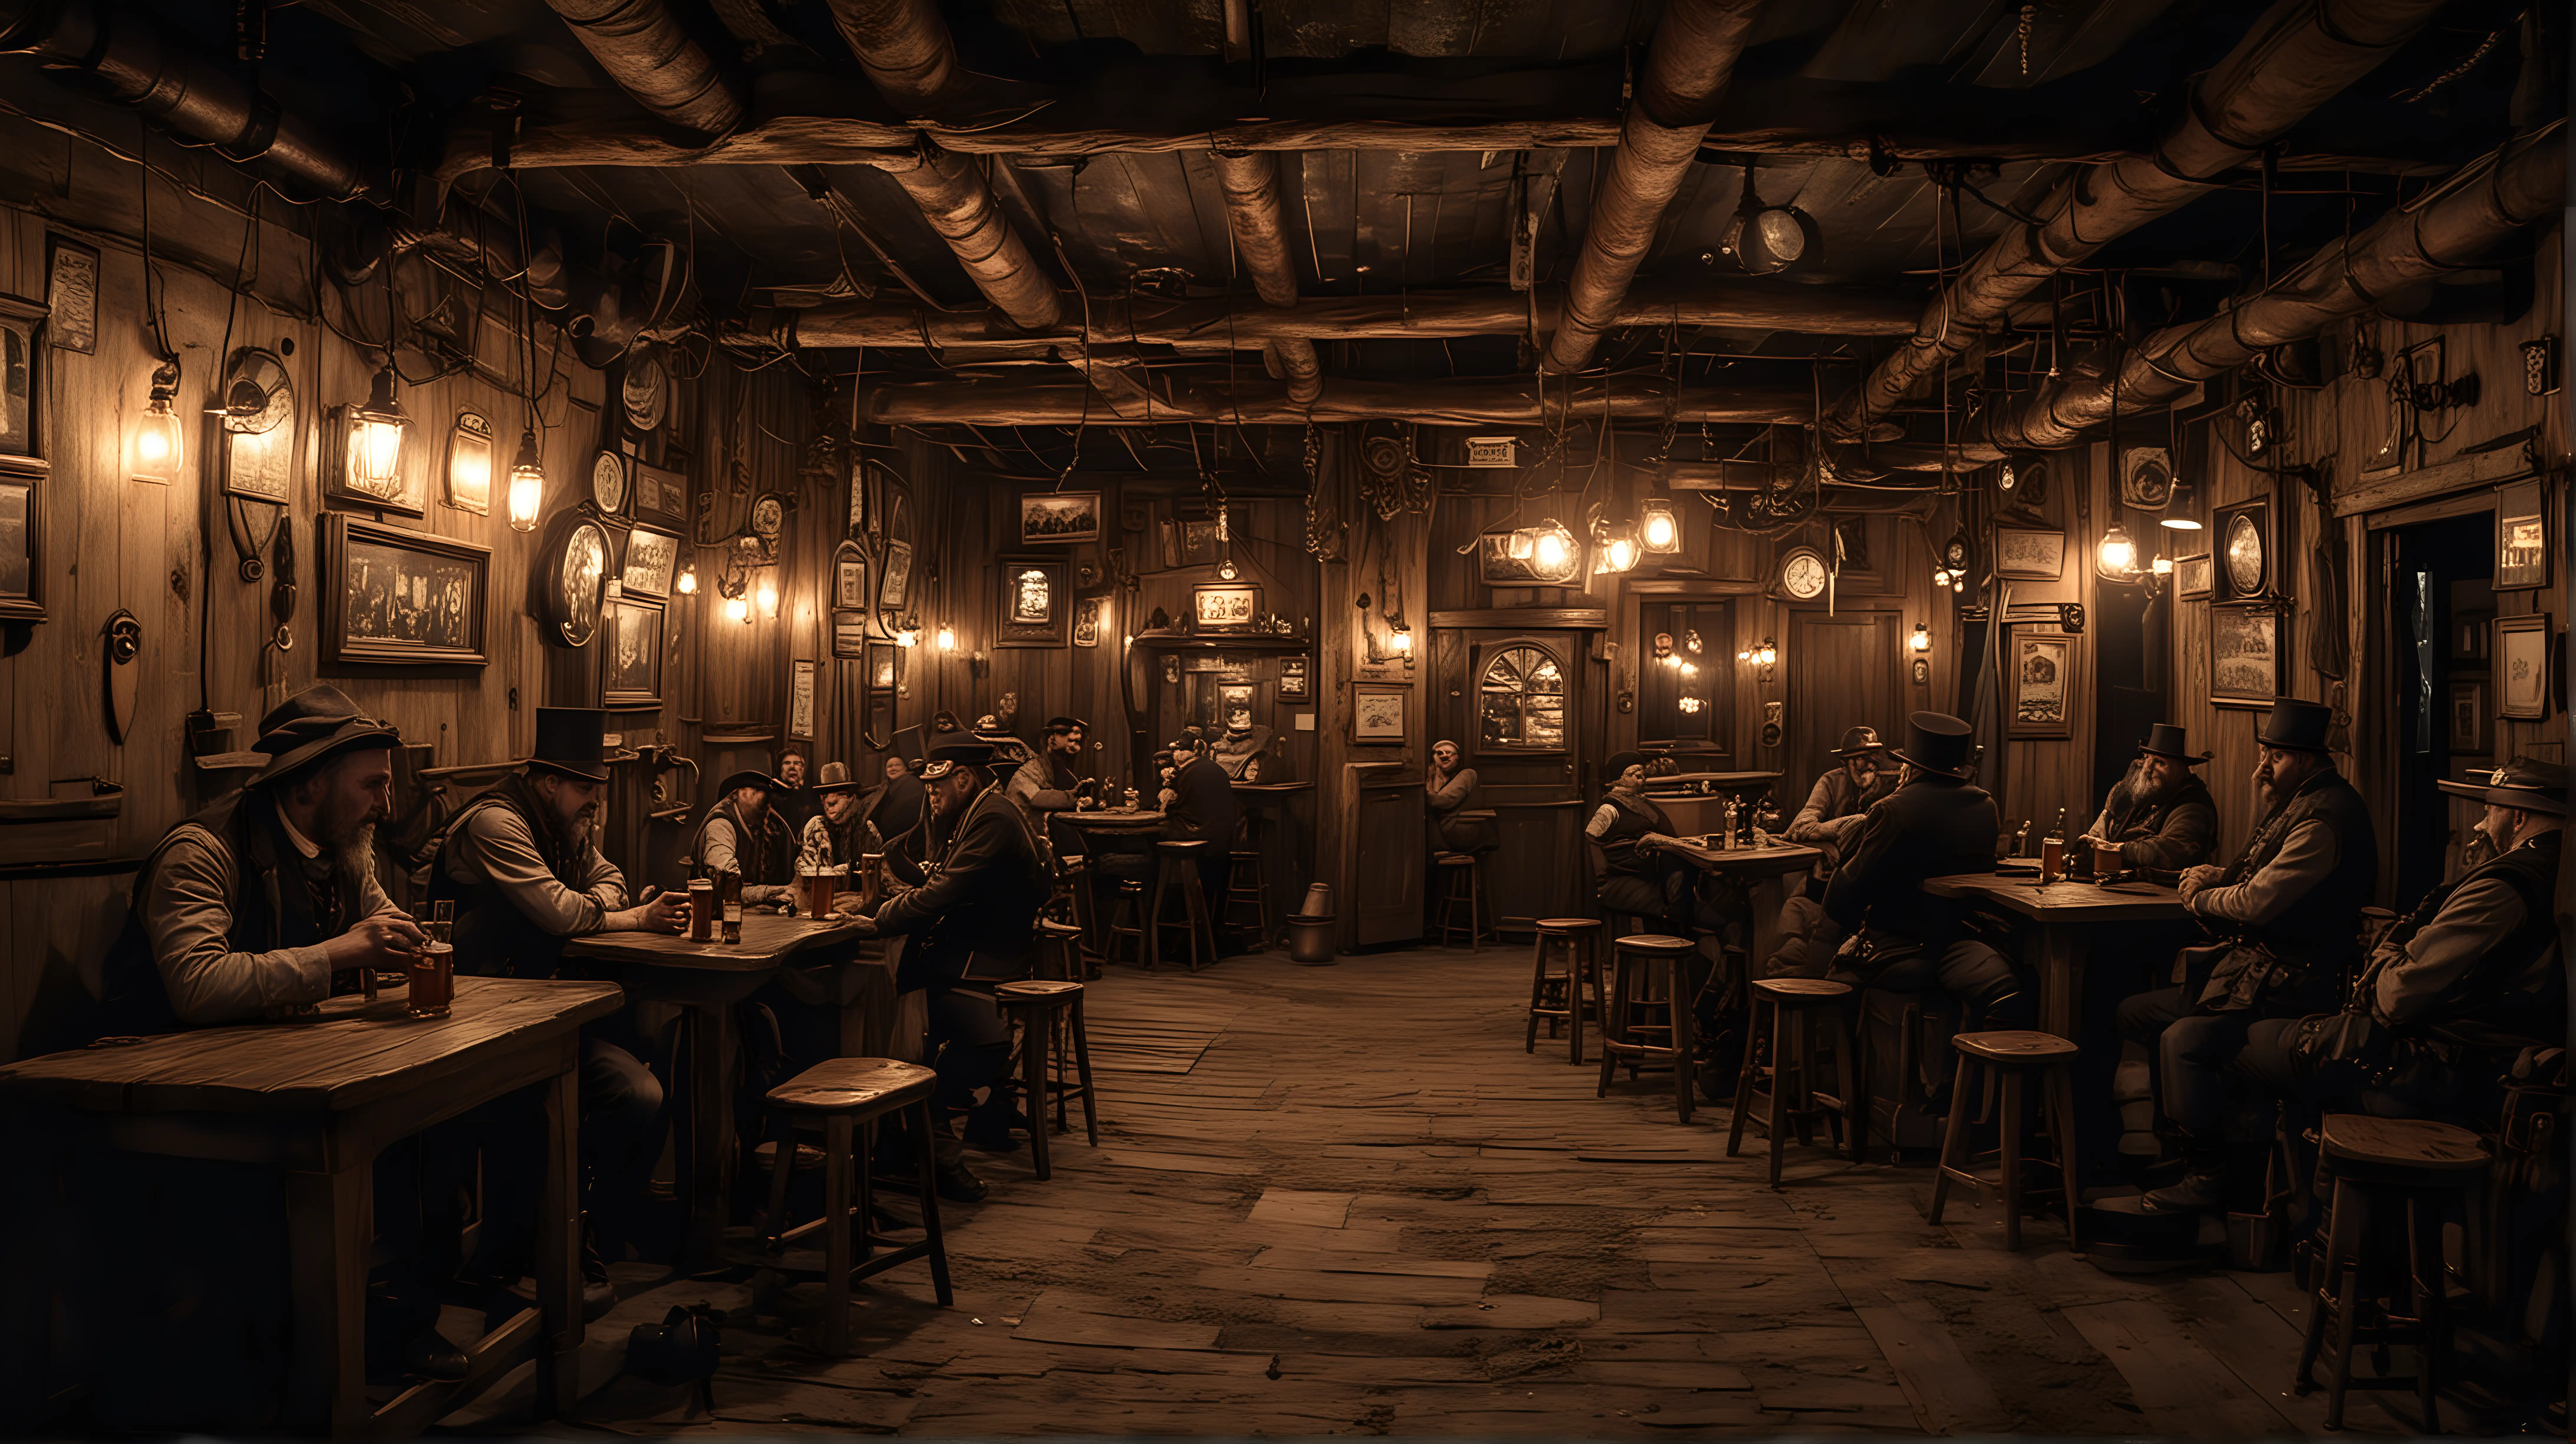 Nightlife in a Rustic Steampunk Pub